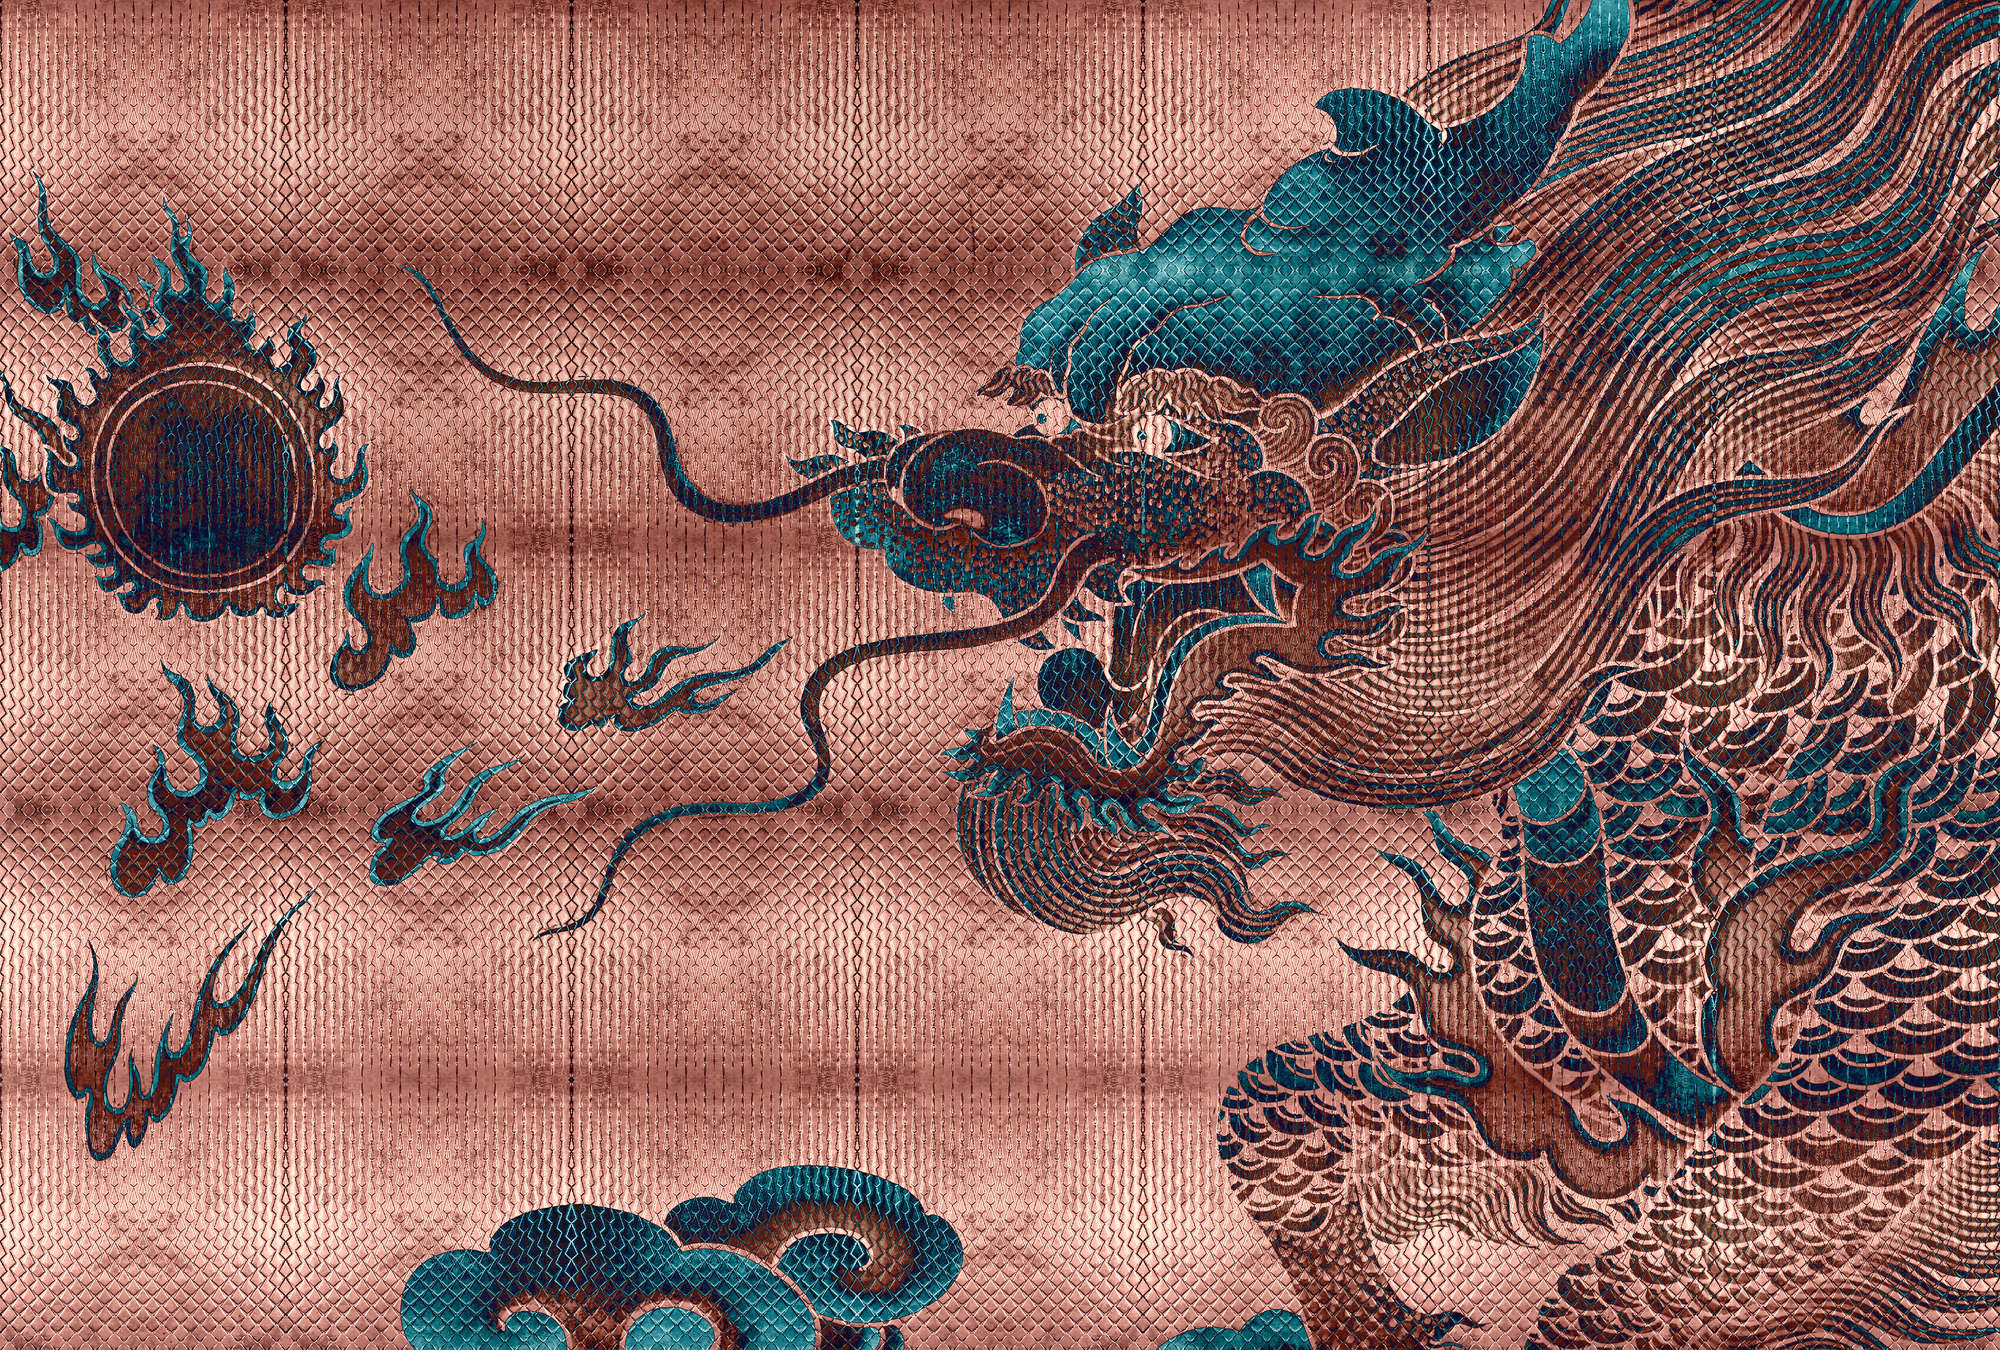             Shenzen 1 - Fotomurali Dragon Asian Syle con colori metallici
        